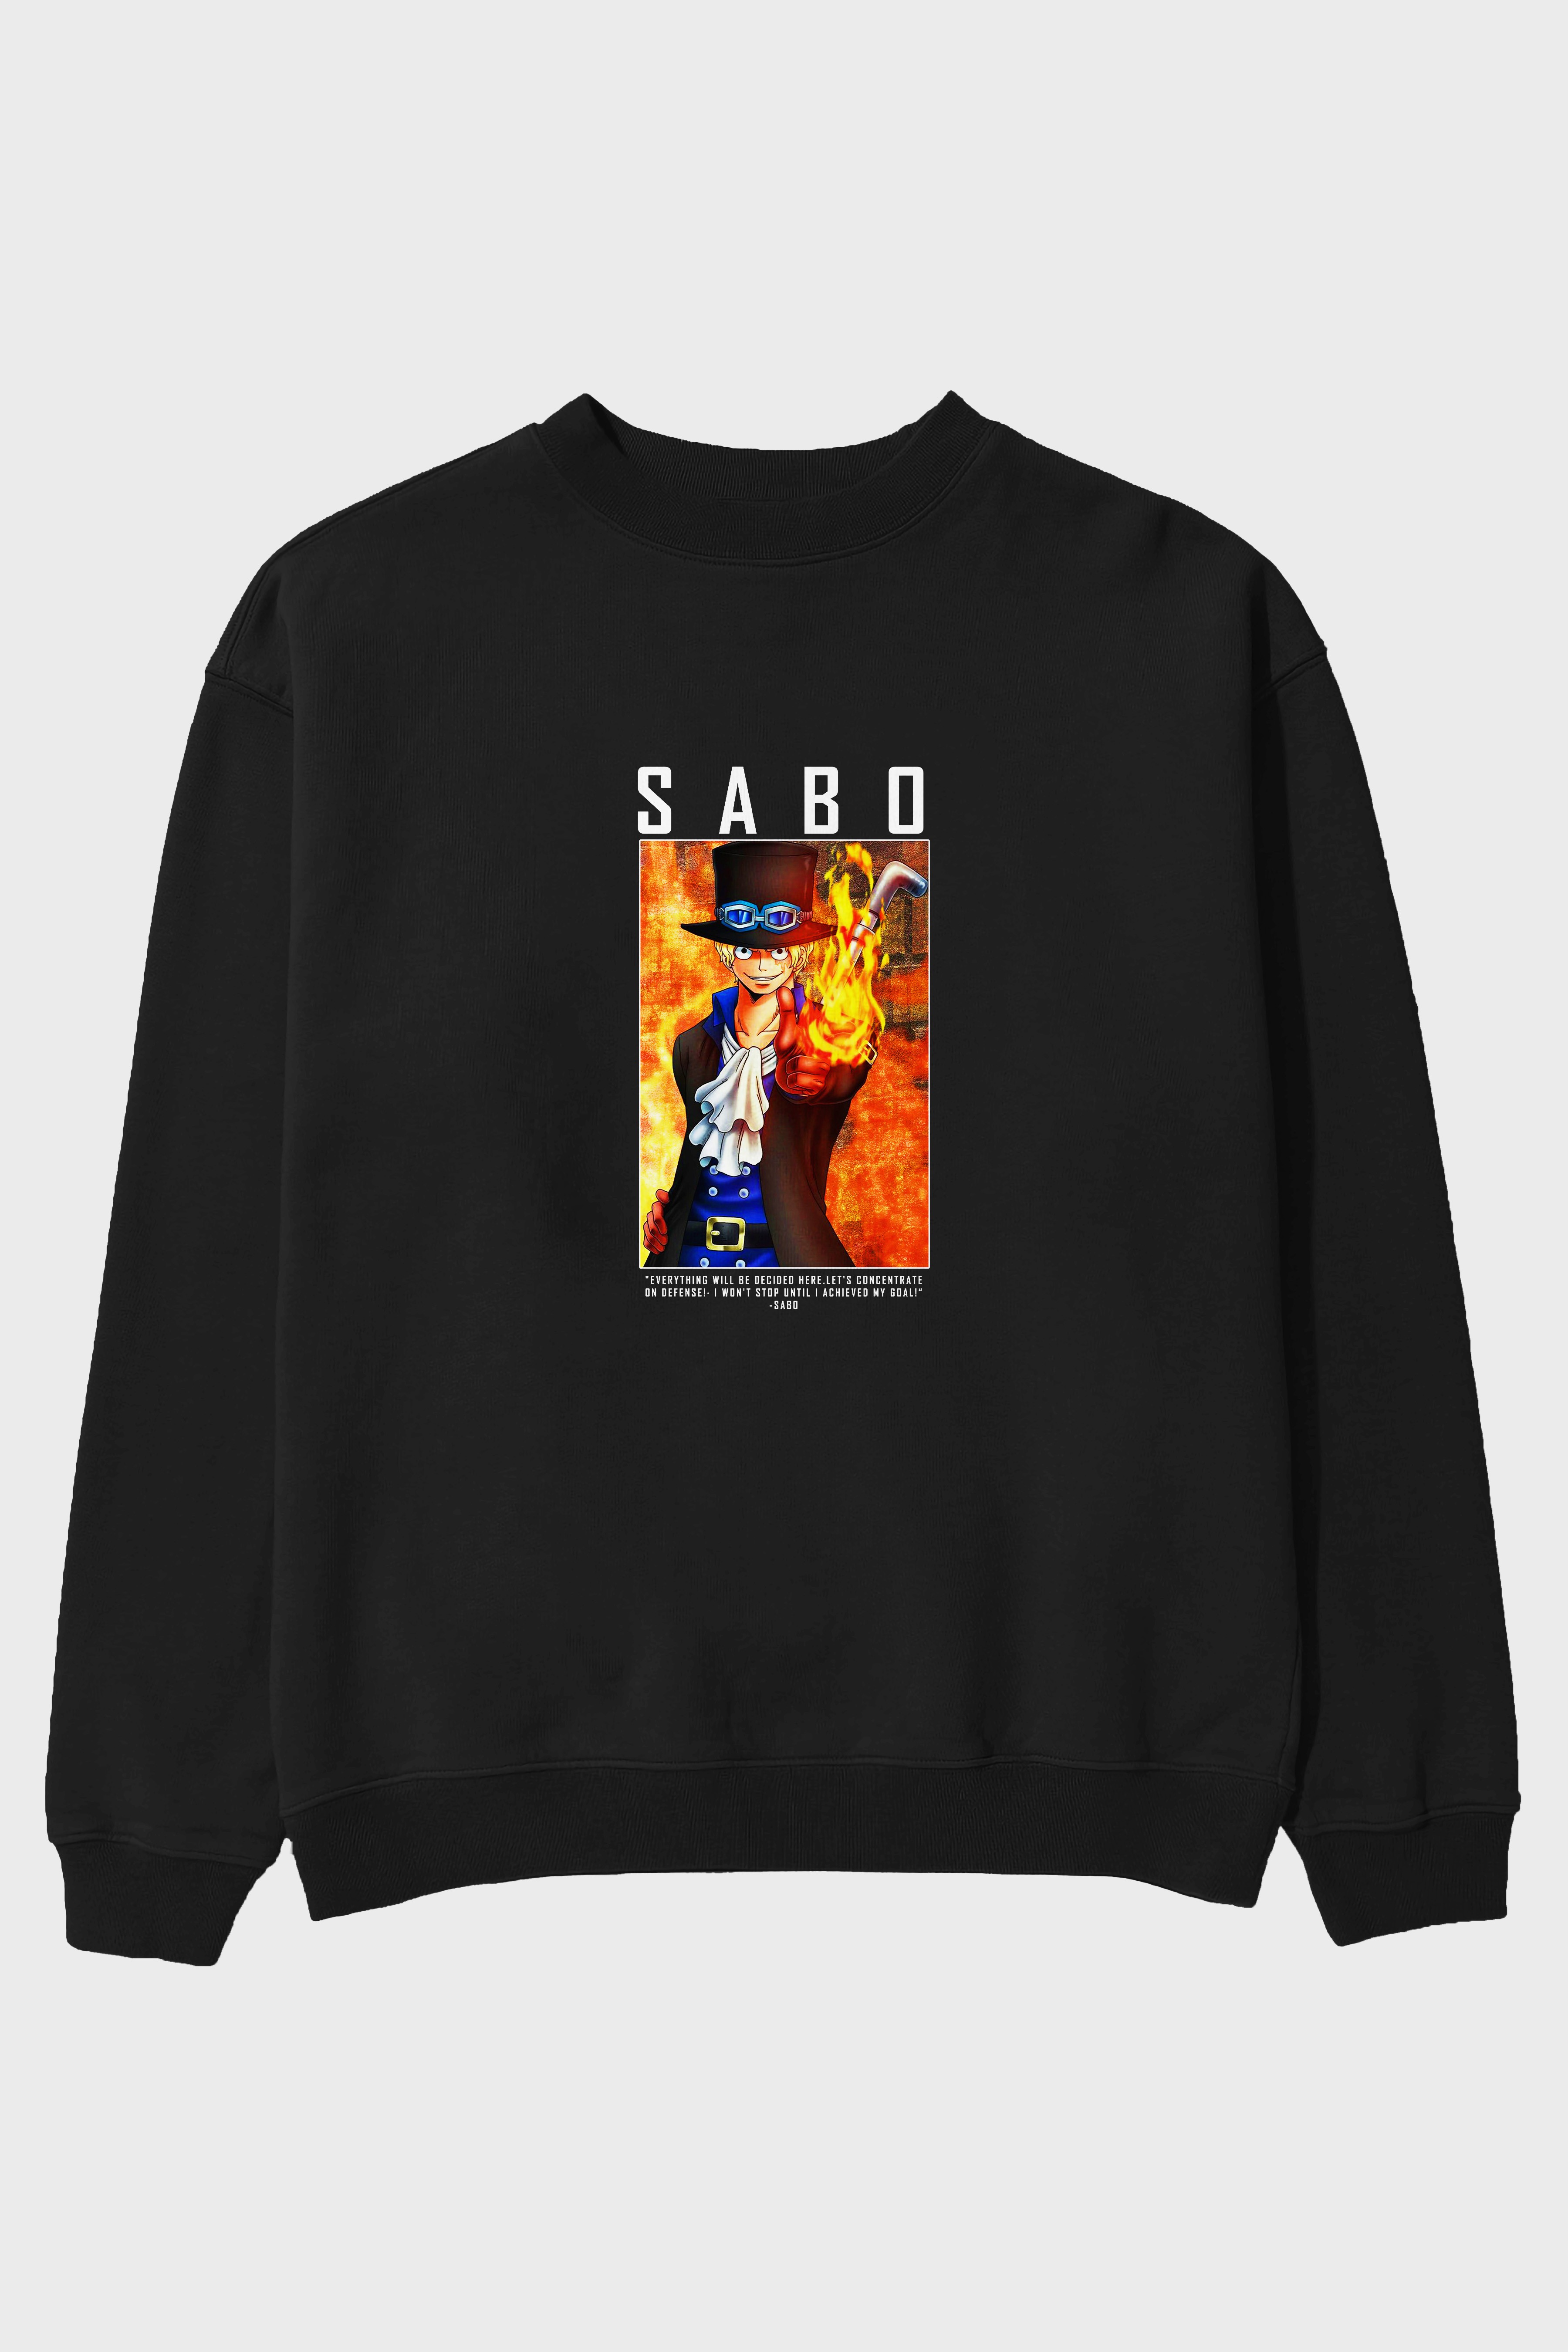 Sabo Ön Baskılı Anime Oversize Sweatshirt Erkek Kadın Unisex